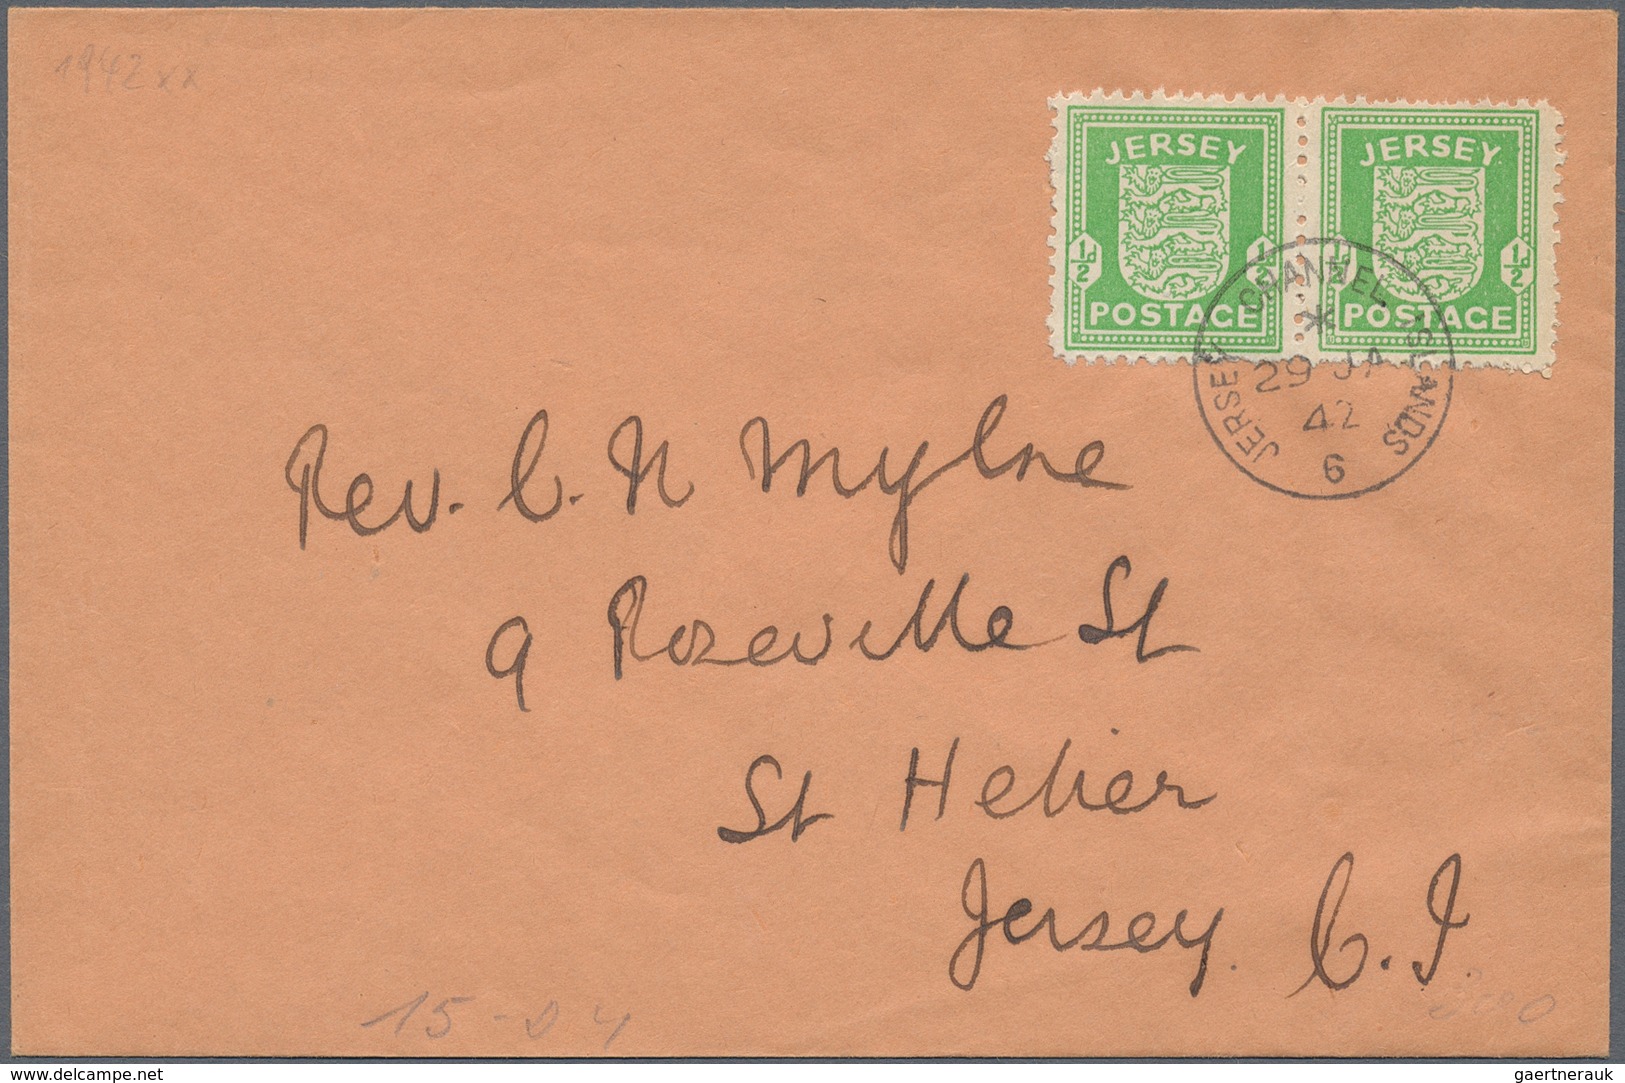 Deutsches Reich - 3. Reich: 1938/1945, die "etwas andere" Briefsammlung 3. Reich. Die Sammlung begin